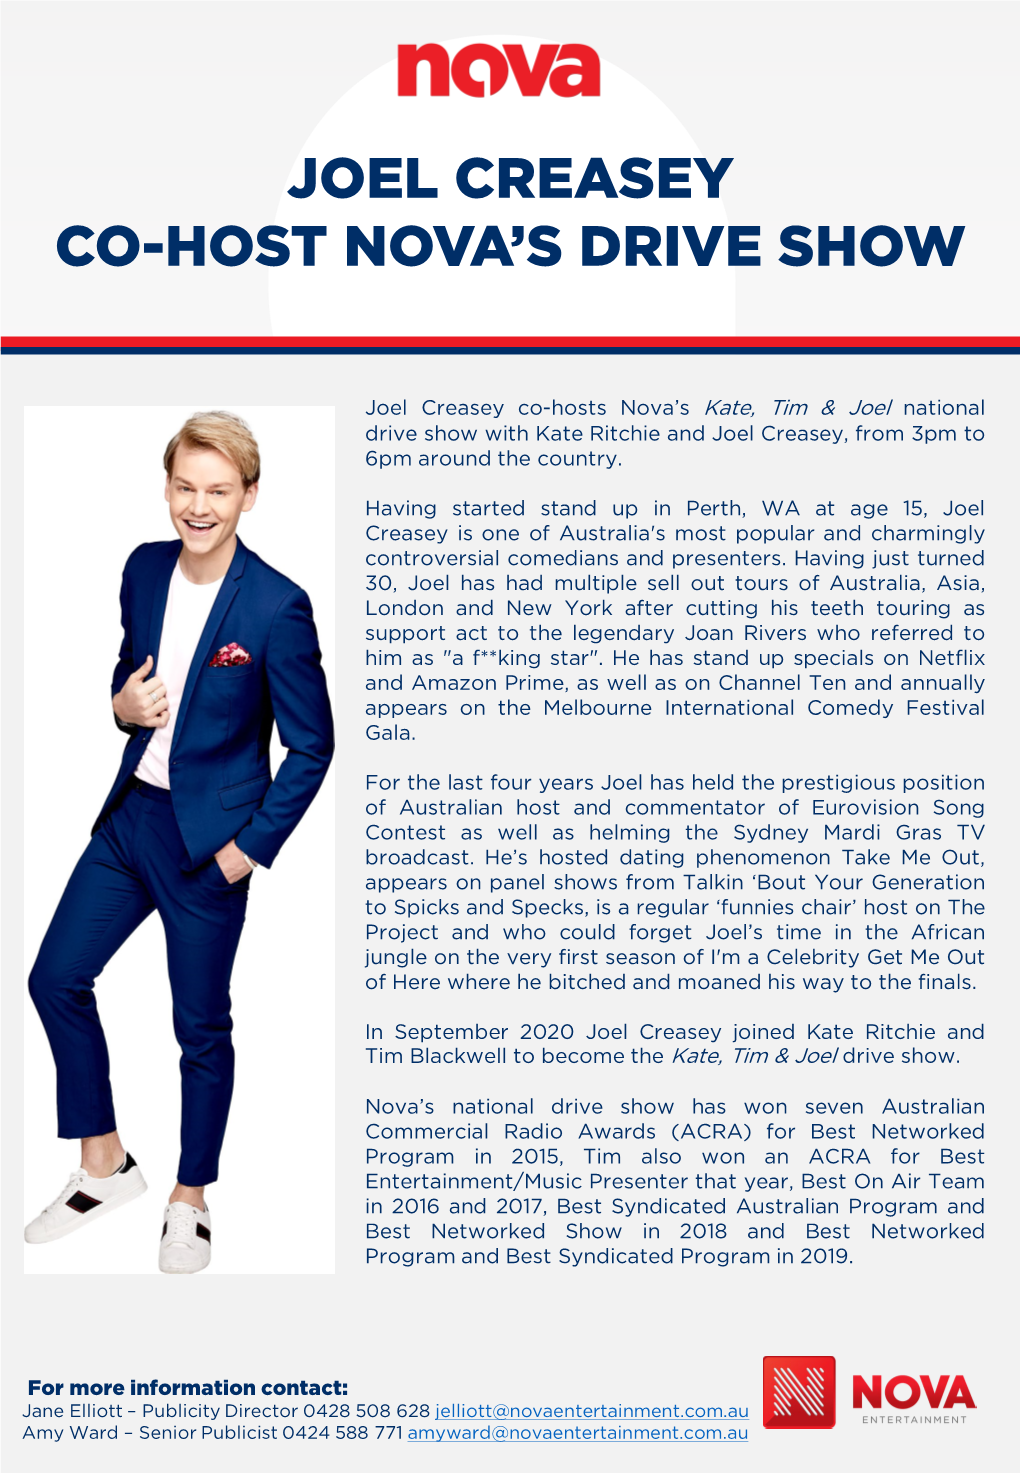 Joel Creasey Co-Host Nova's Drive Show